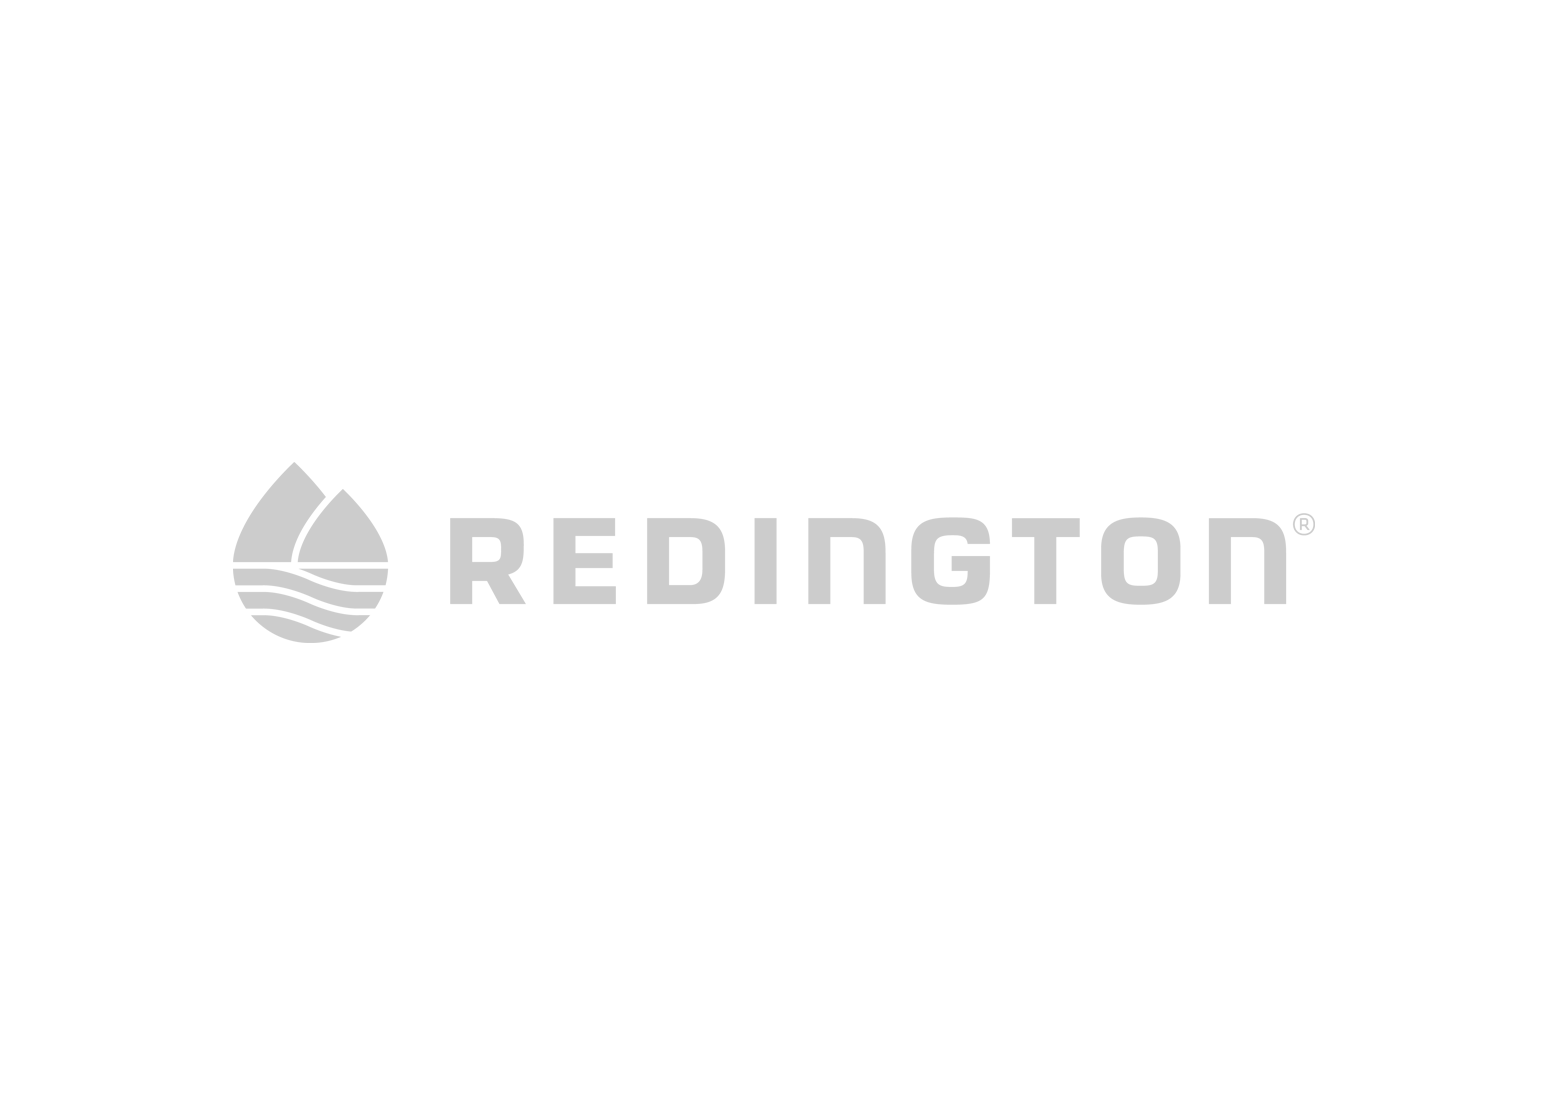 Redington.png